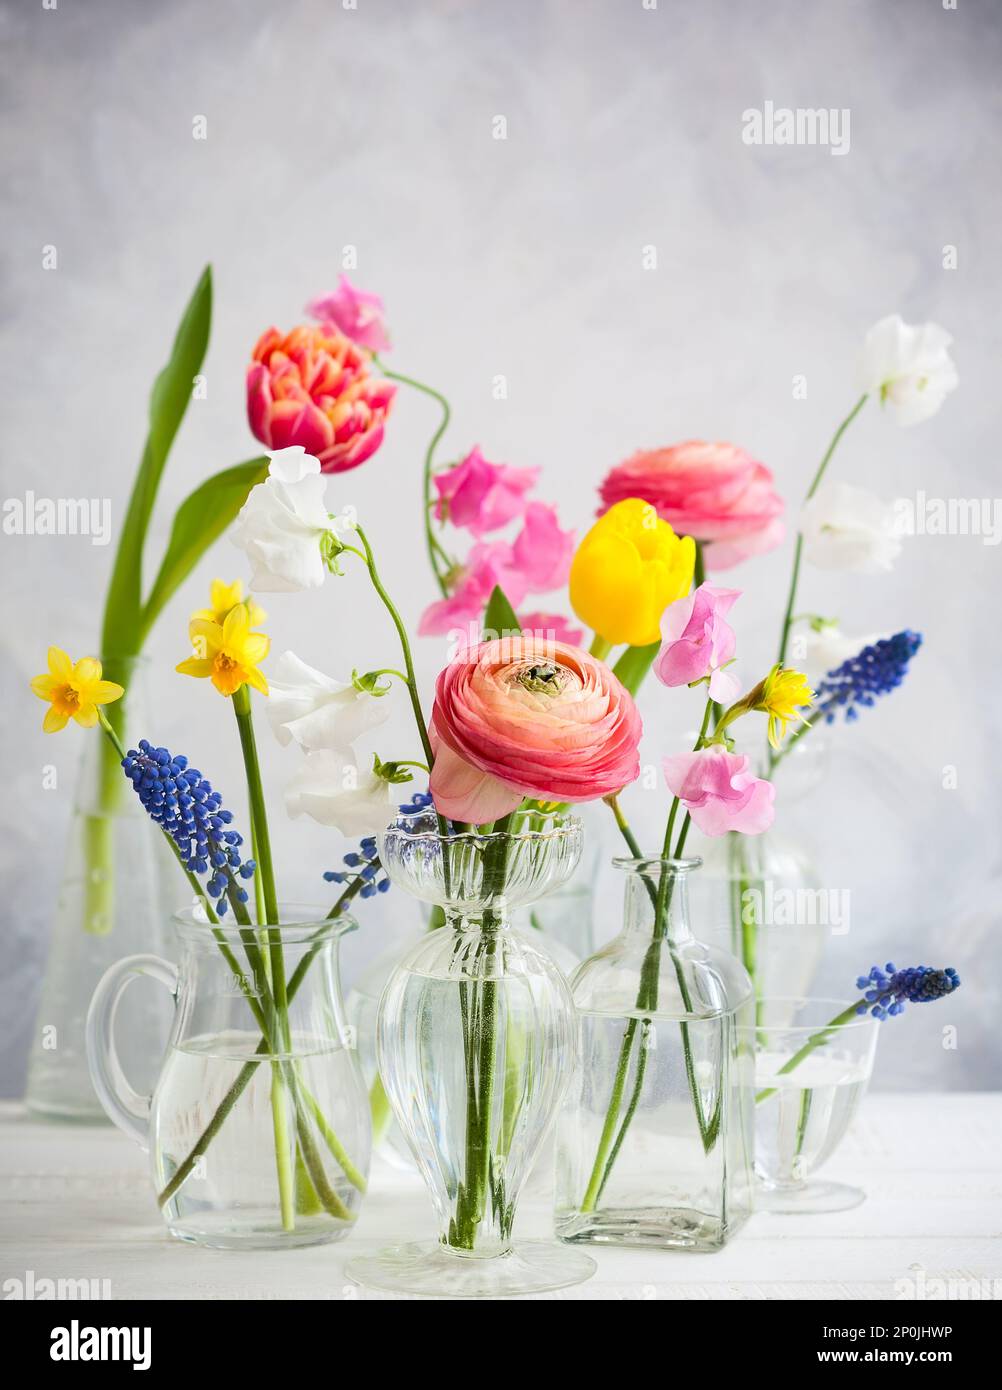 Belles bouquets de fleurs dans des vases en verre sur la table en bois.Tulips,roses,muscari, narcisse, eustoma et hyacinthes Banque D'Images